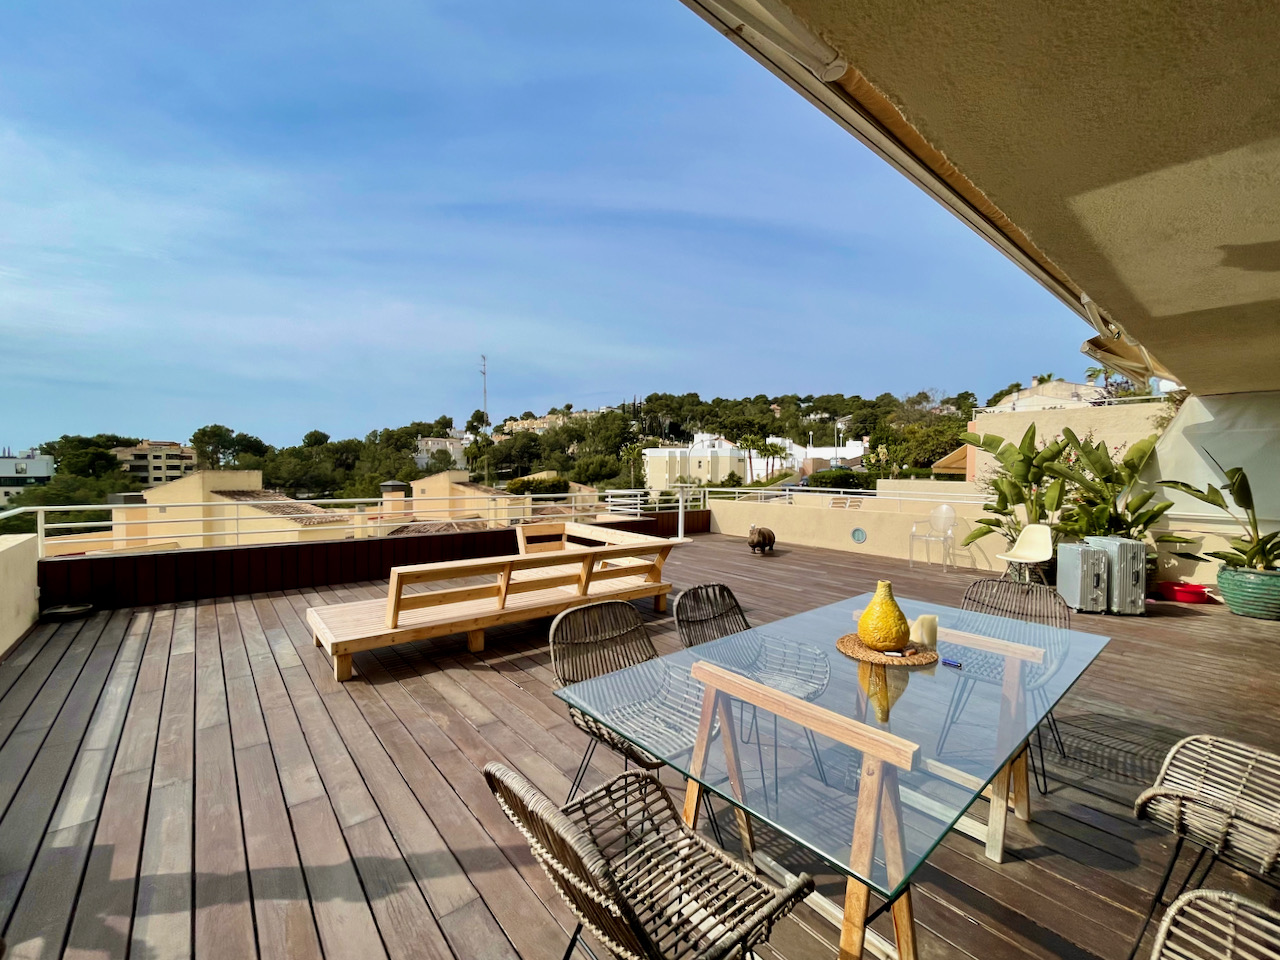 Wohnung mit Meerblick und Terrasse in Cas Catala, Mallorca.